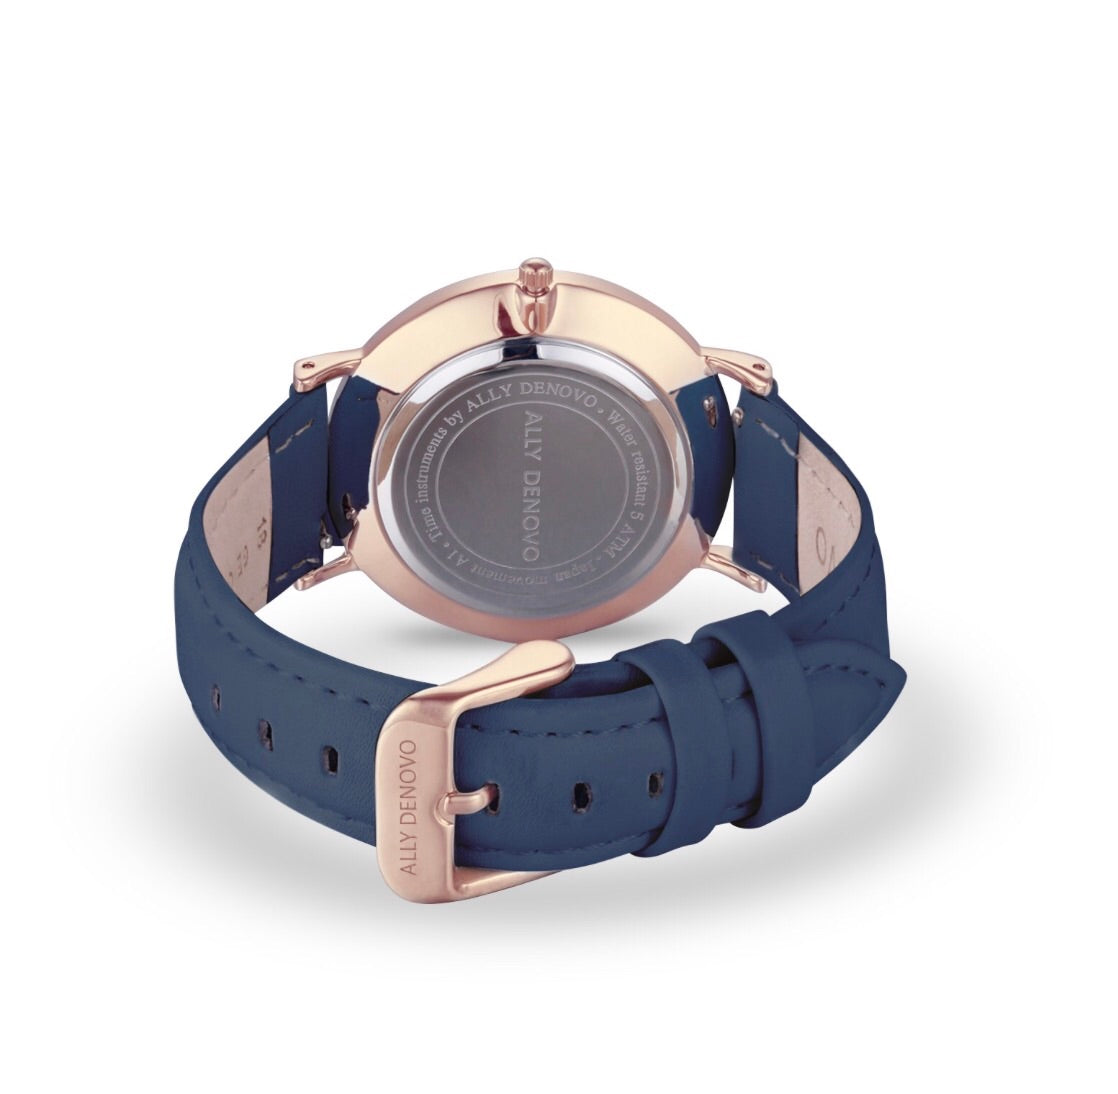 Gaia pearl皮革腕錶-粉晶菱形琉璃玫瑰金框海軍藍真皮錶帶  